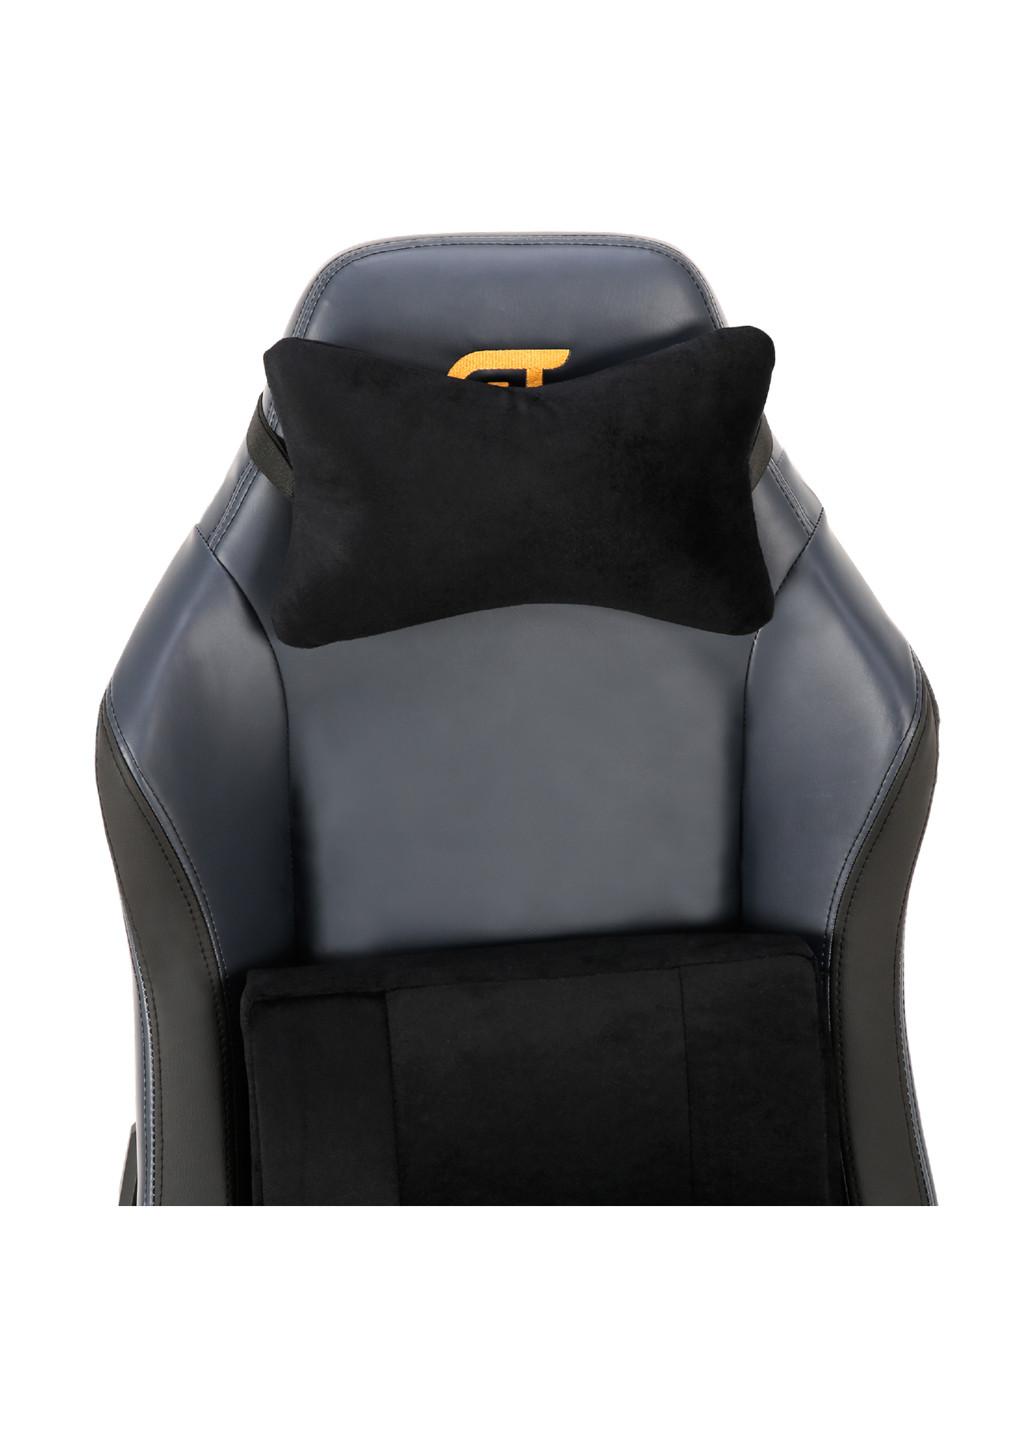 Геймерское кресло GT Racer x-2610 ash/black (177294956)